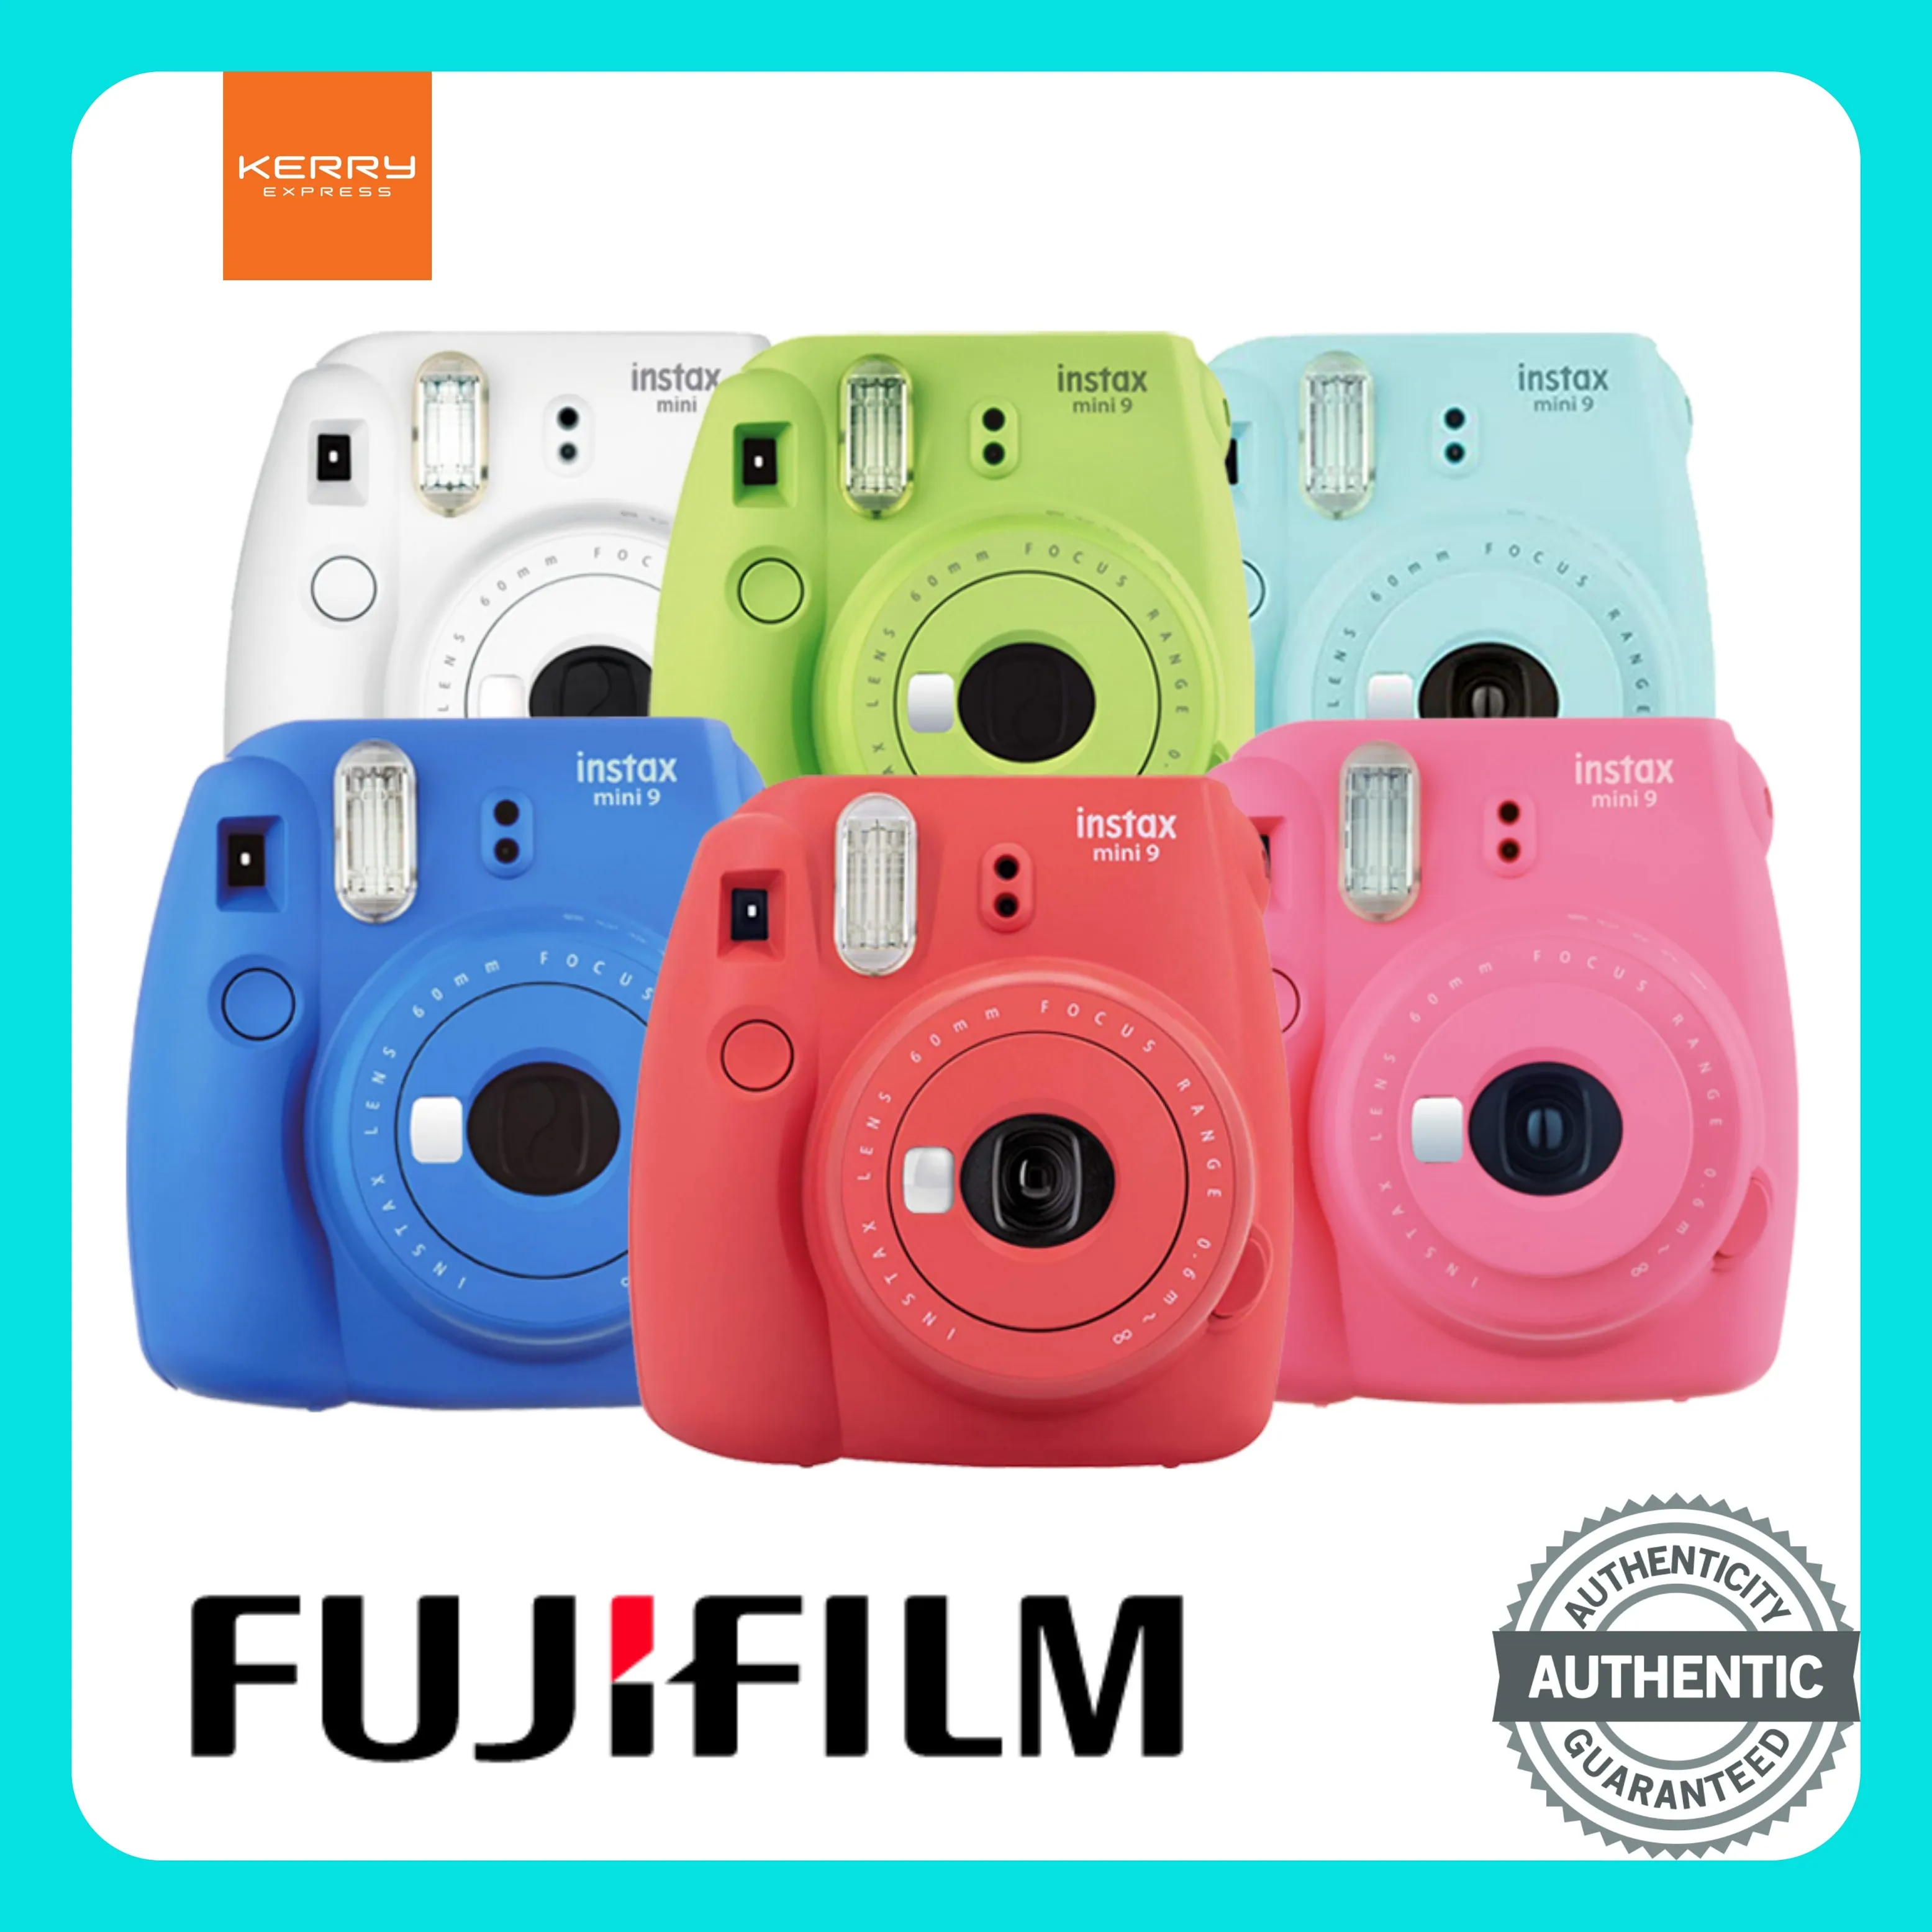 กล้องโพลารอยด์ Fujifilm Instax Mini 9 หลากหลายสี กดถ่ายปุ๊ปได้รูปทันที! ขนาดกะทัดรัด มาพร้อมแฟลชและช่องมองภาพในตัว กล้อง fuji กล้องฟิล์ม กล้อง instax กล้อง polaroid กล้อง ฟูจิ กล้อง instax mini 9 กล้องโพลารอยด์ fujifilm instax mini 9 ราคาถูก ของแท้100%